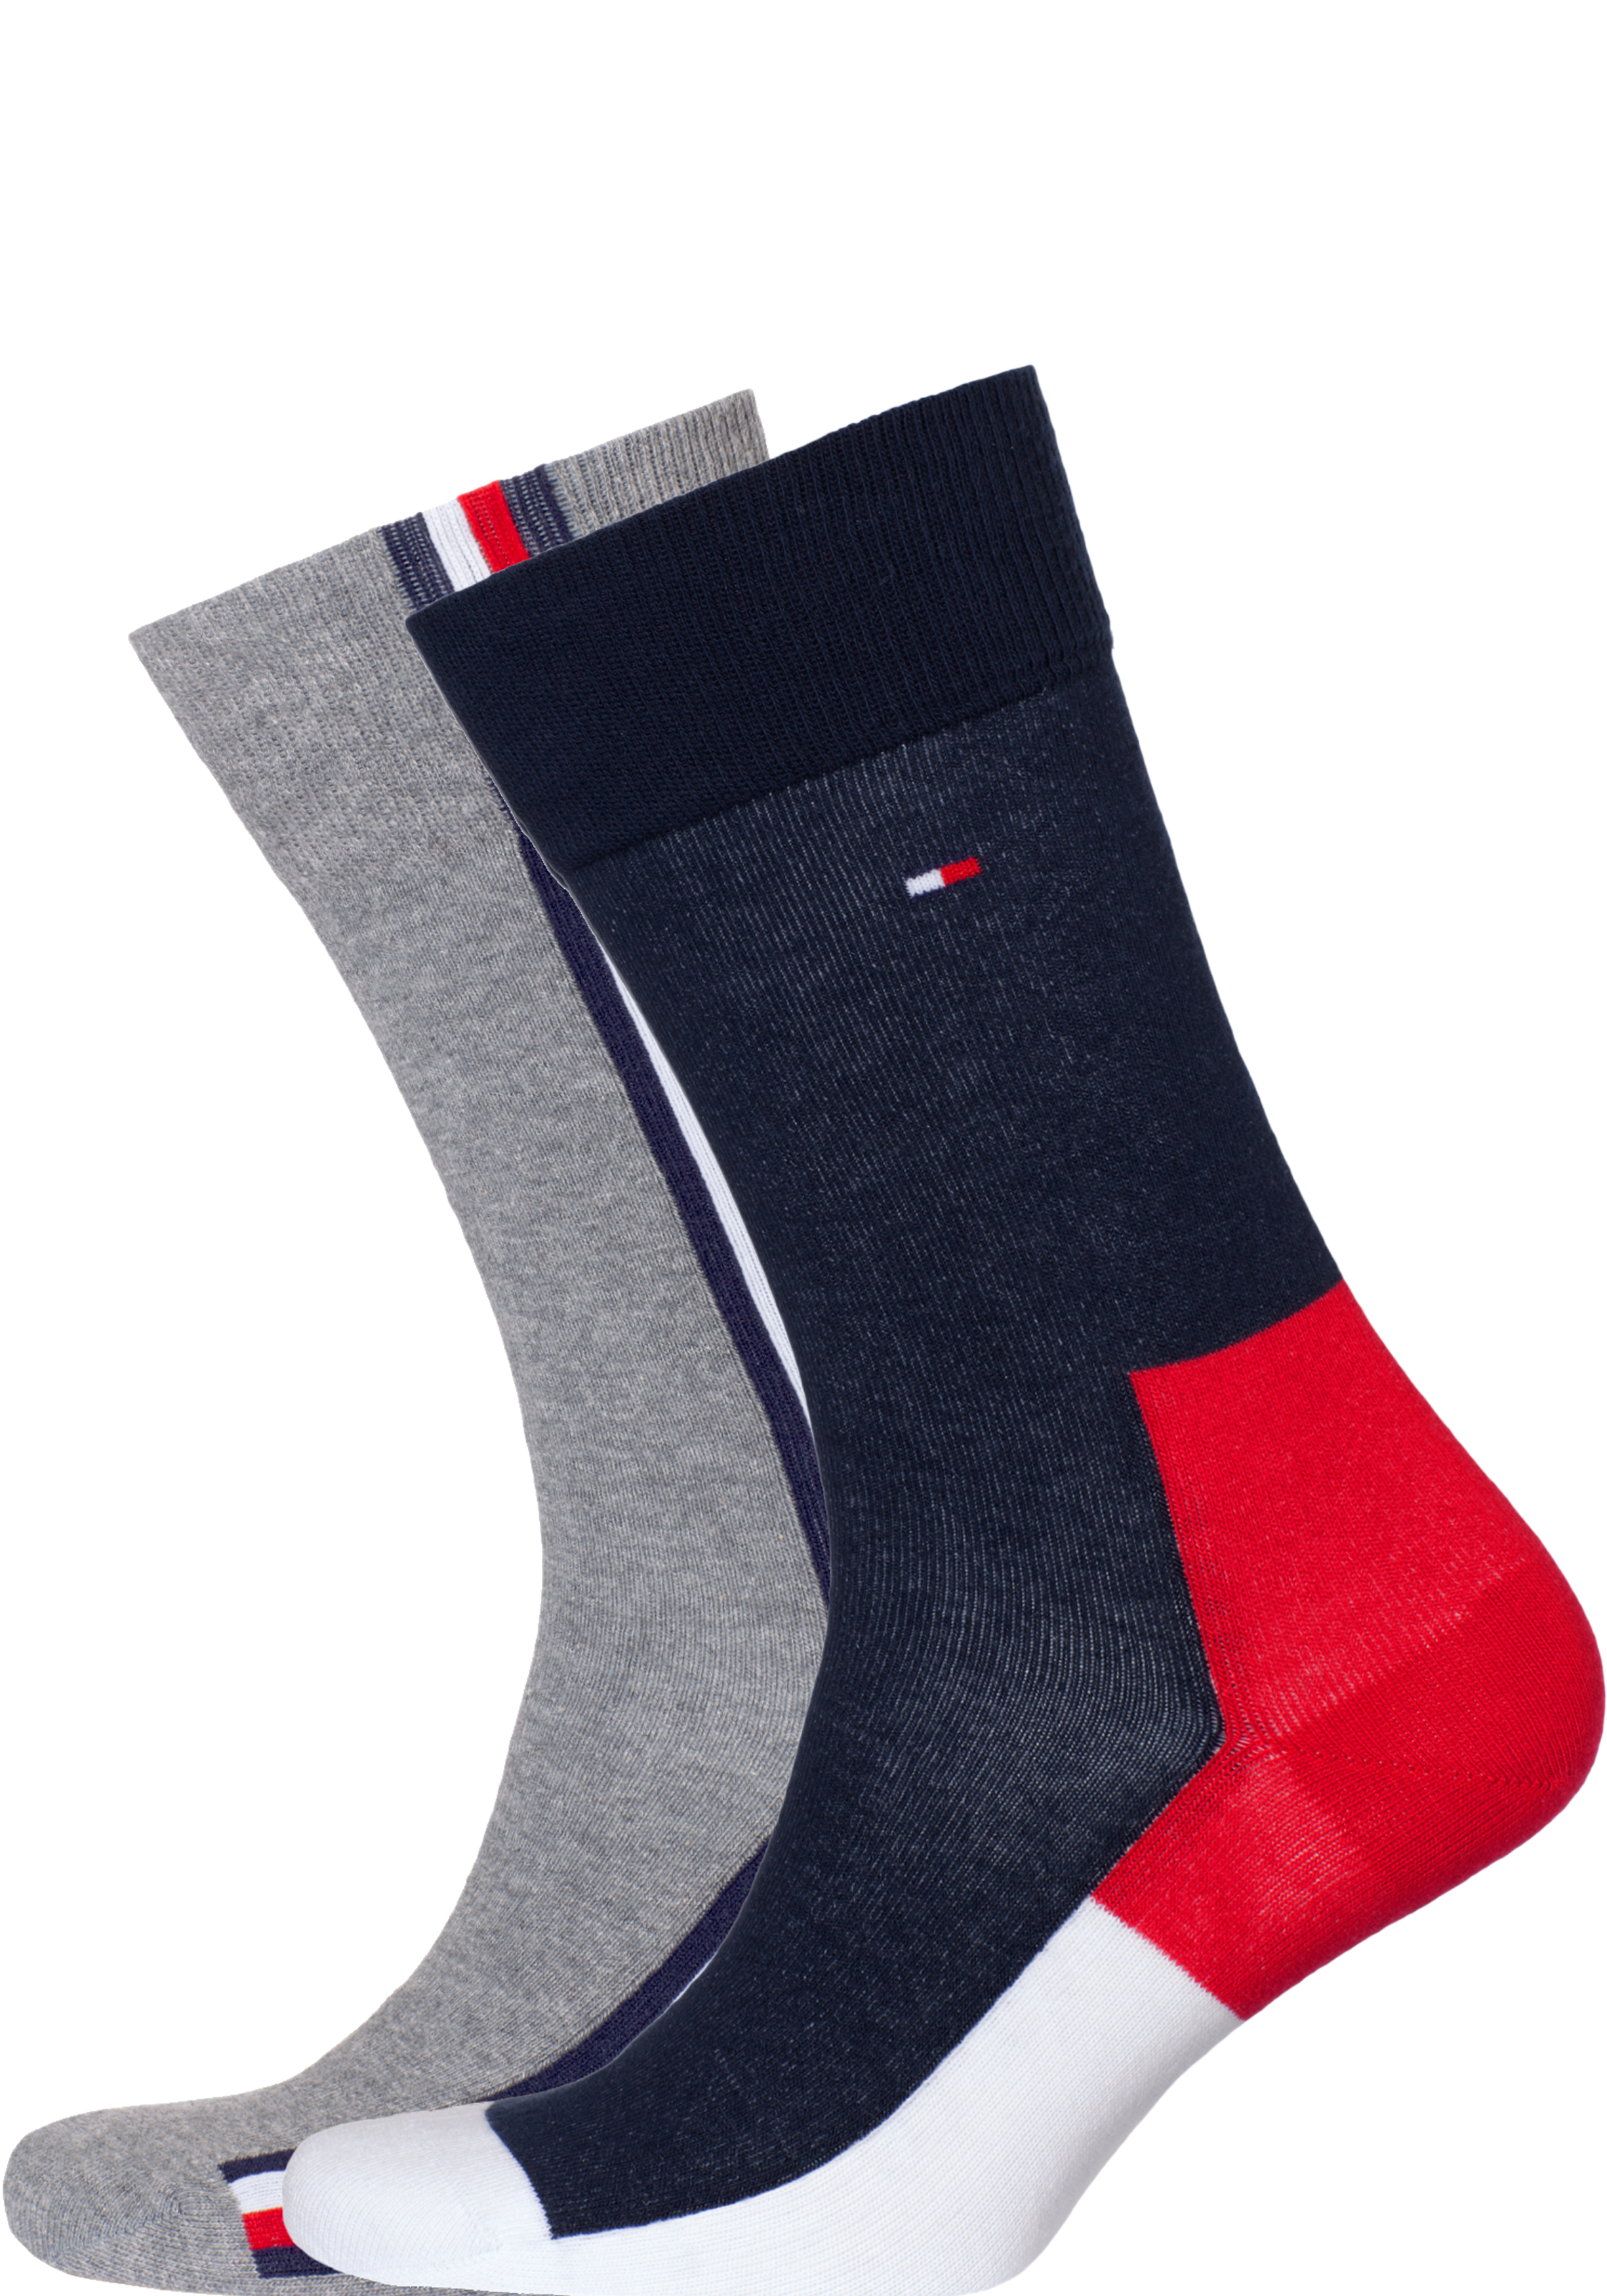 moordenaar iets Kiezen Tommy Hilfiger Iconic Hidden Sock (2-pack), heren sokken katoen,... - Shop  de nieuwste voorjaarsmode